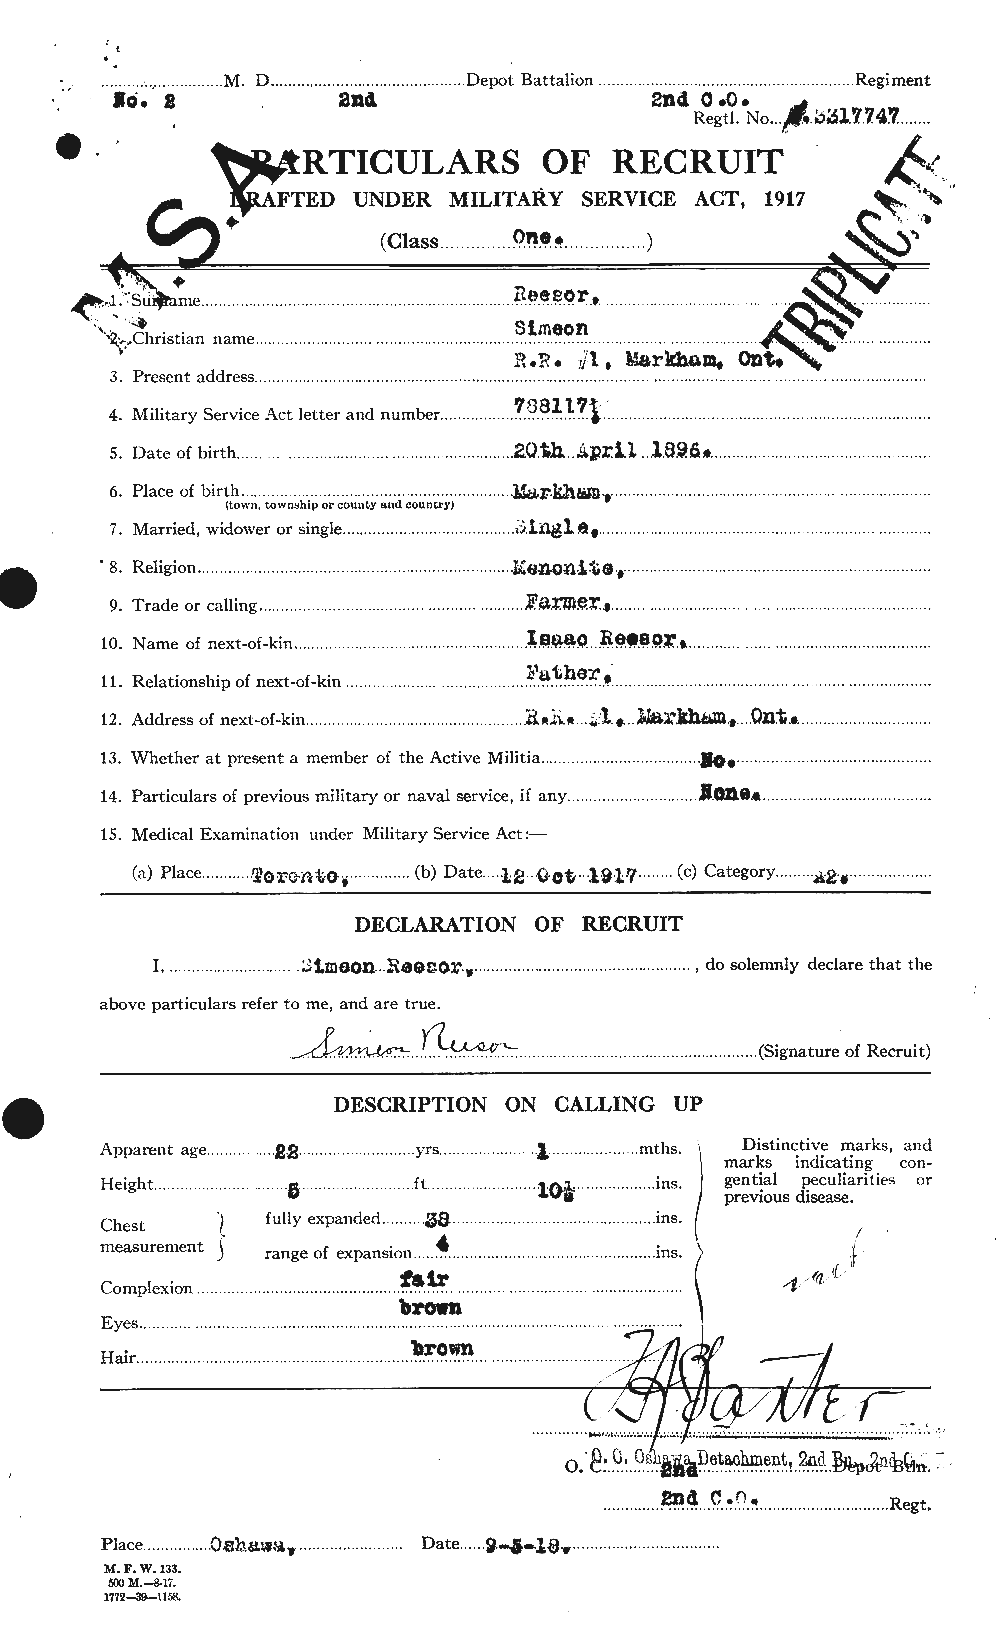 Dossiers du Personnel de la Première Guerre mondiale - CEC 596739a